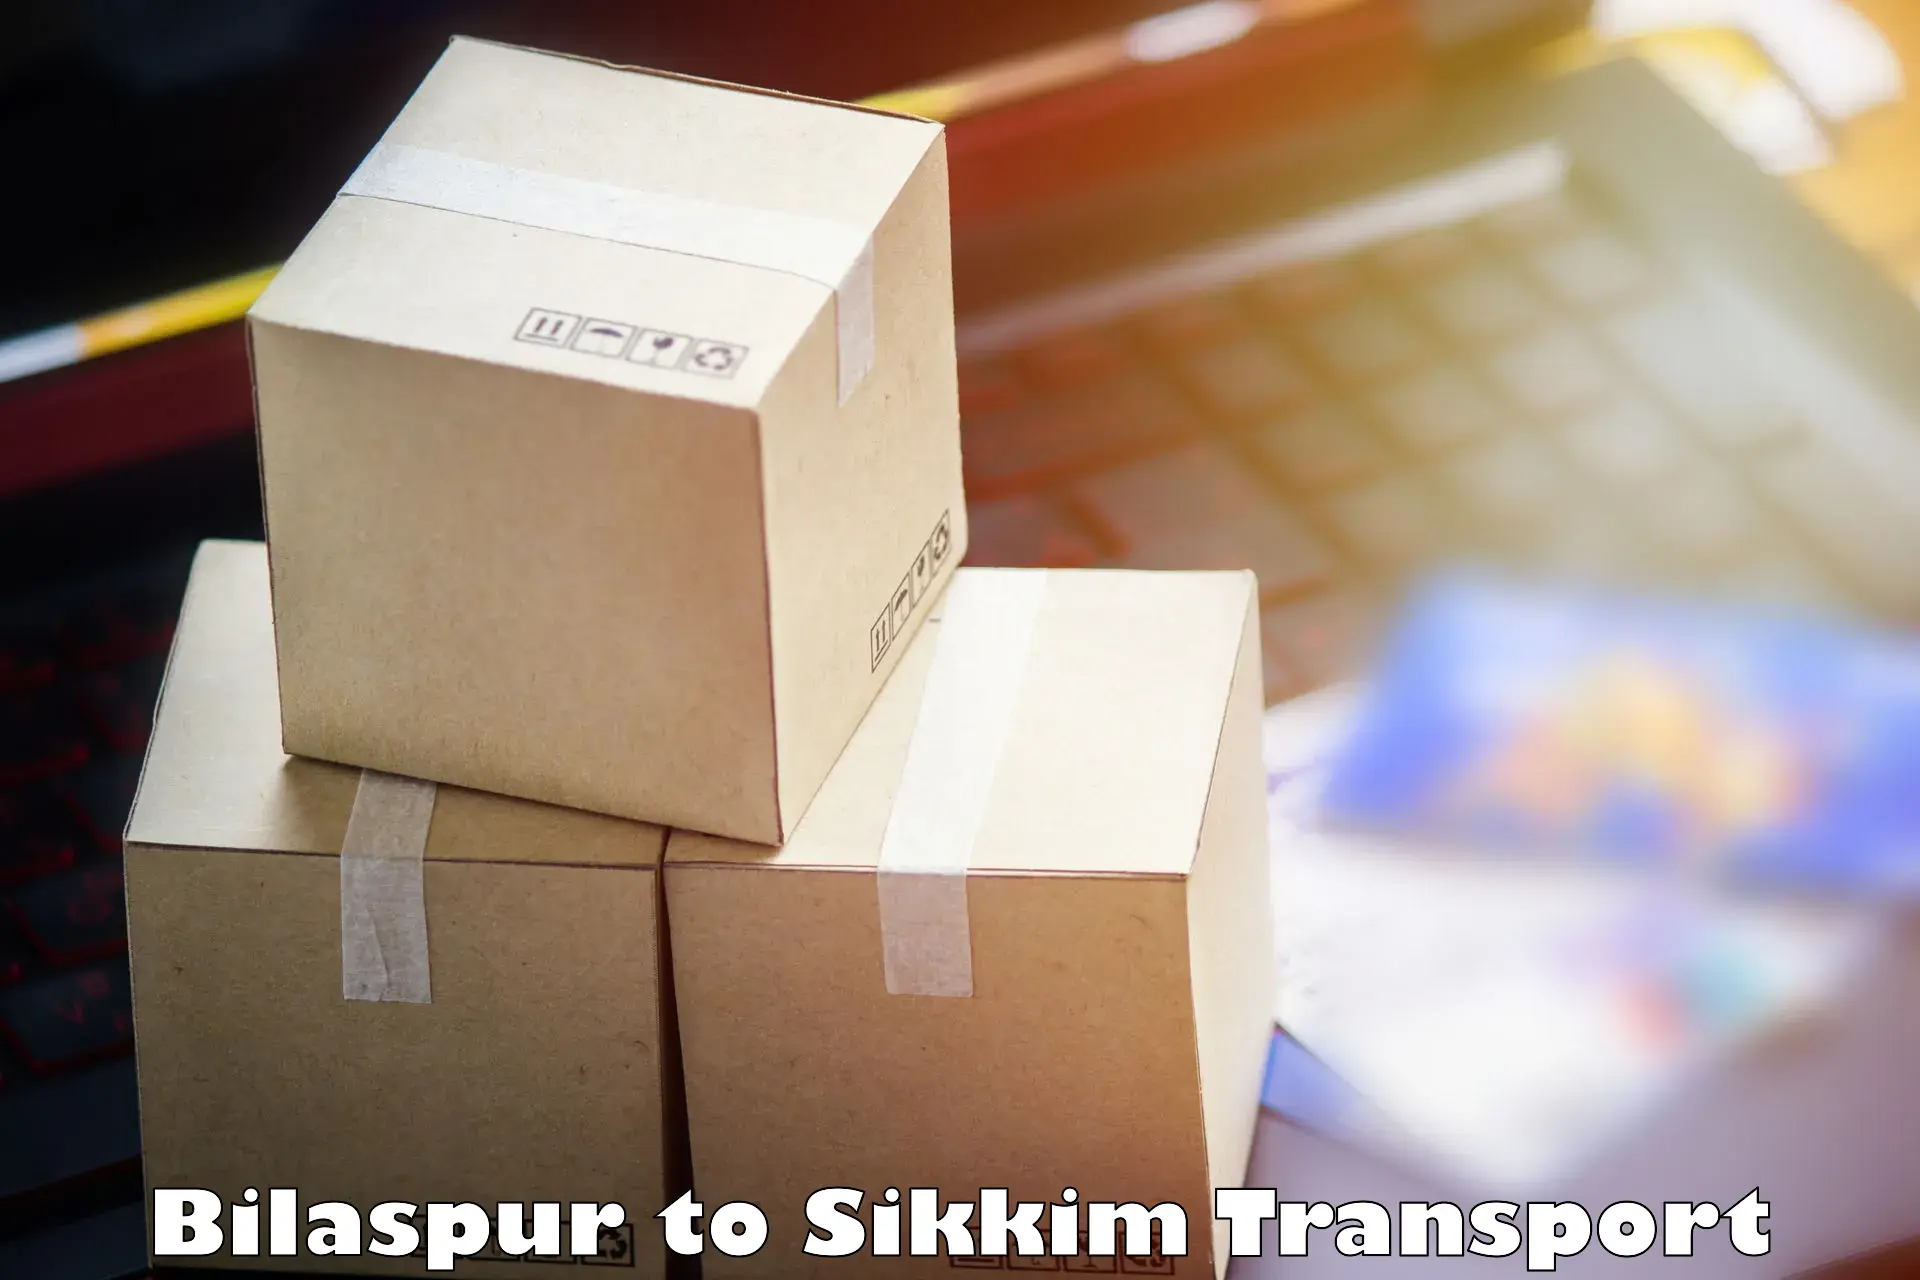 Online transport service Bilaspur to North Sikkim